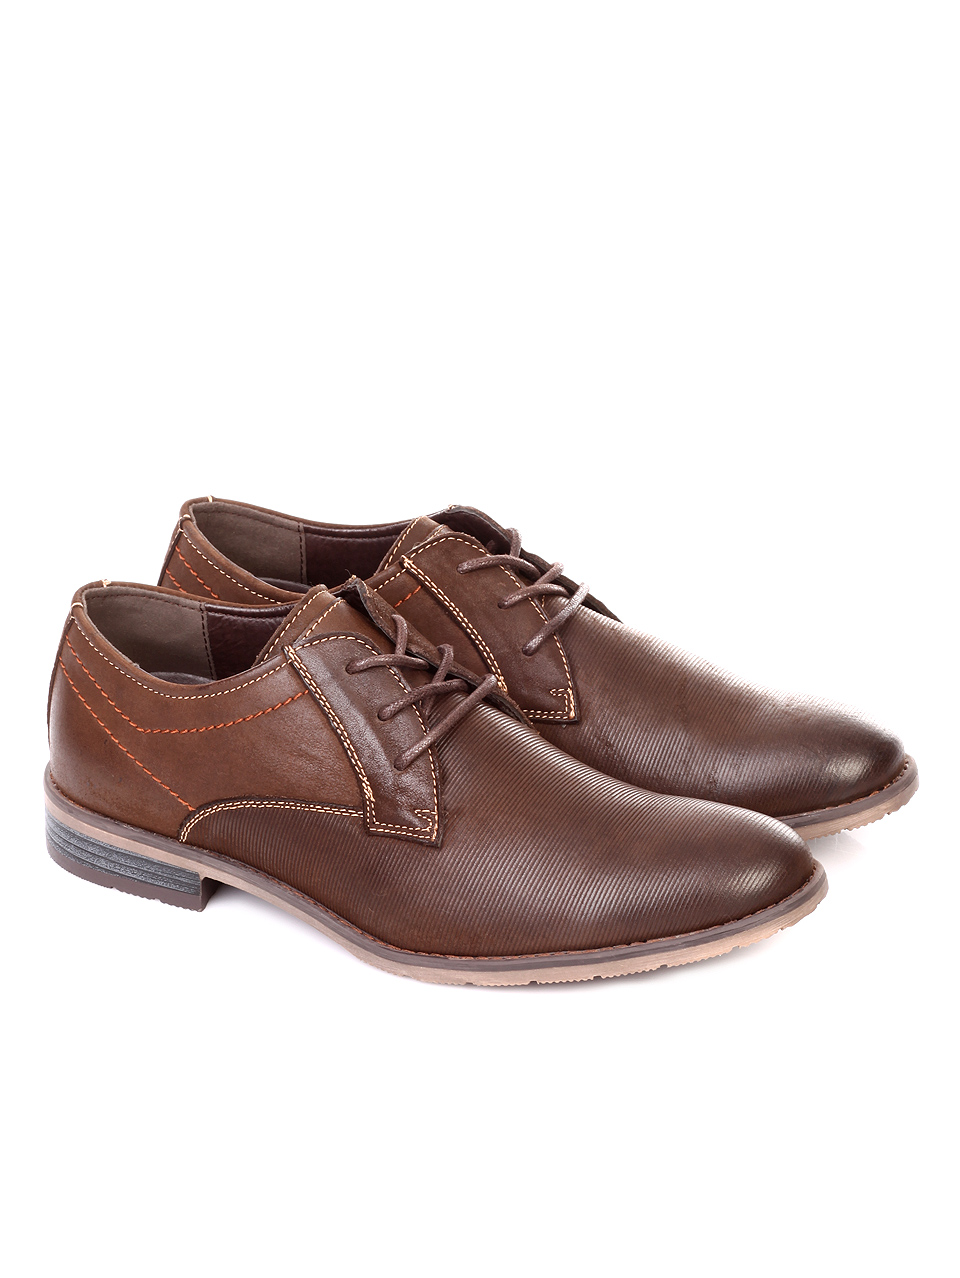 Елегантни мъжки обувки от естествен набук 7N-18728 brown